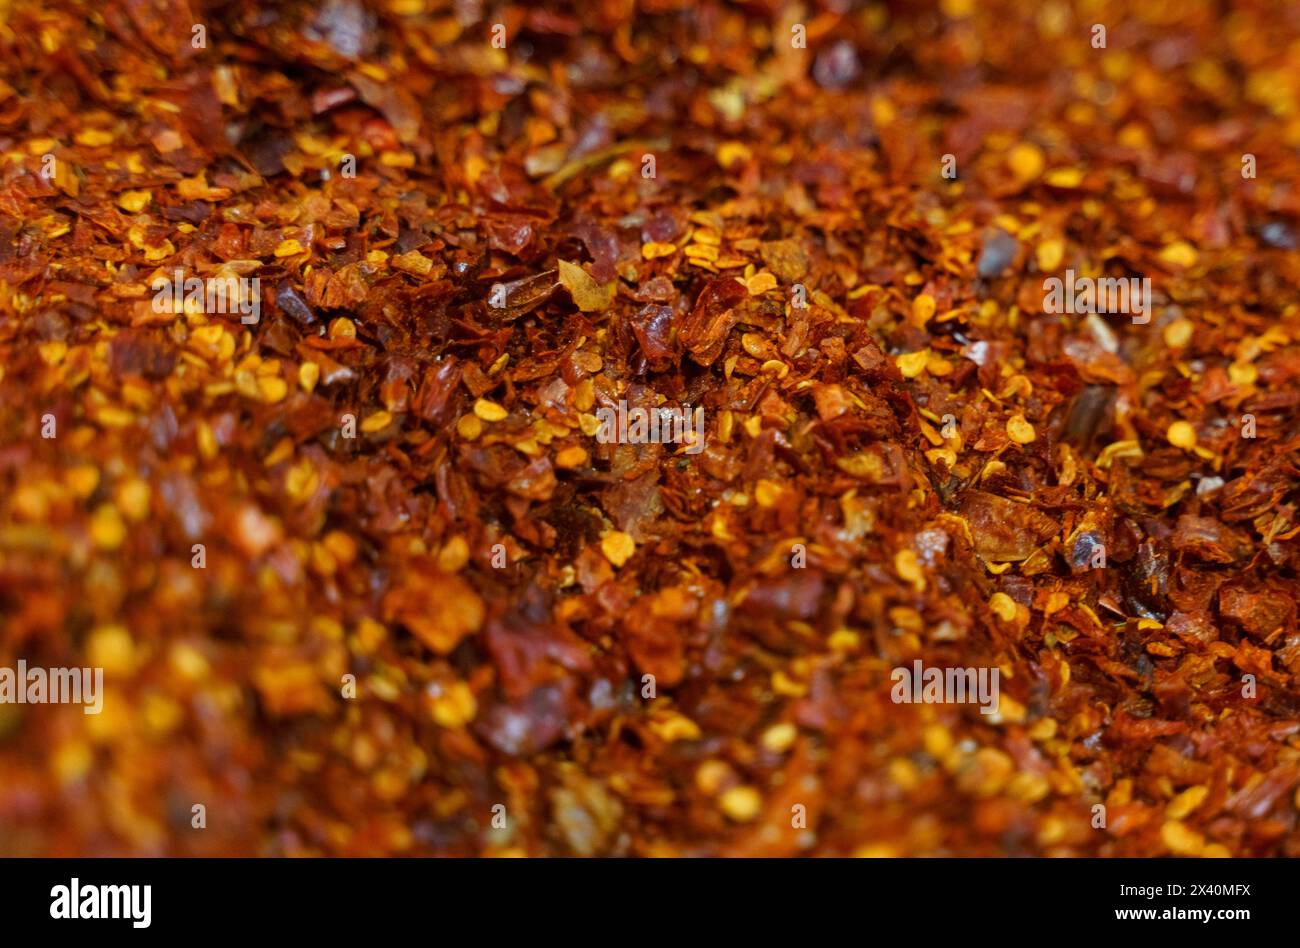 Un vivace primo piano che mostra la consistenza e i colori di una miscela di peperoni caldi secchi, a indicare piccantezza e sapore. Foto Stock